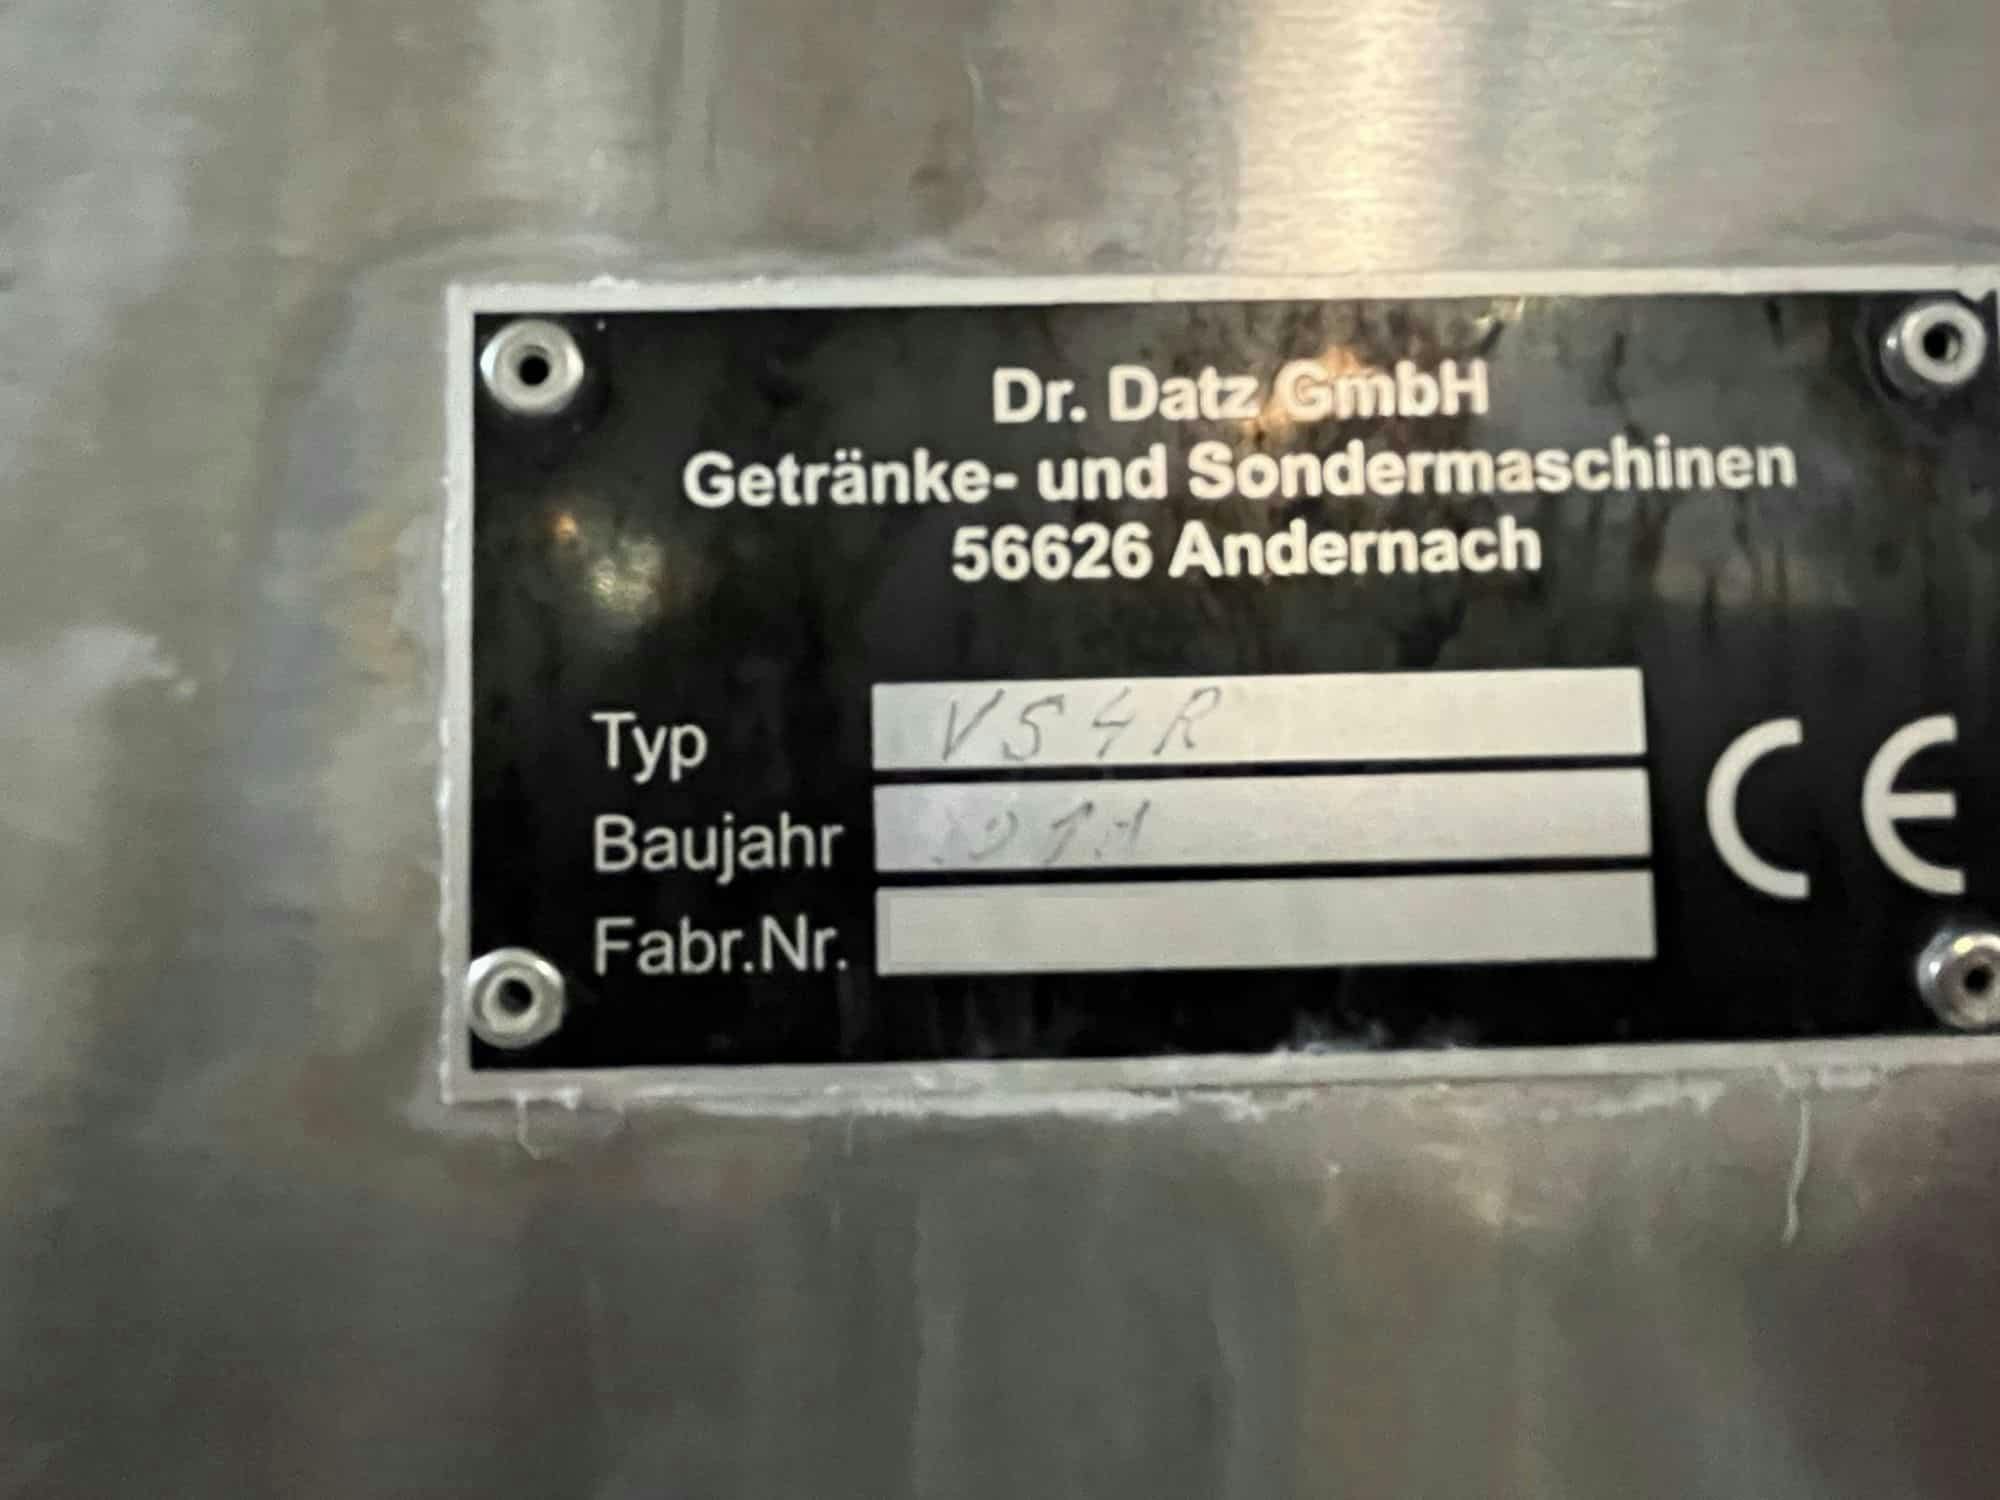 Výrobní štítek společnosti Dr. Datz GmbH VS4R